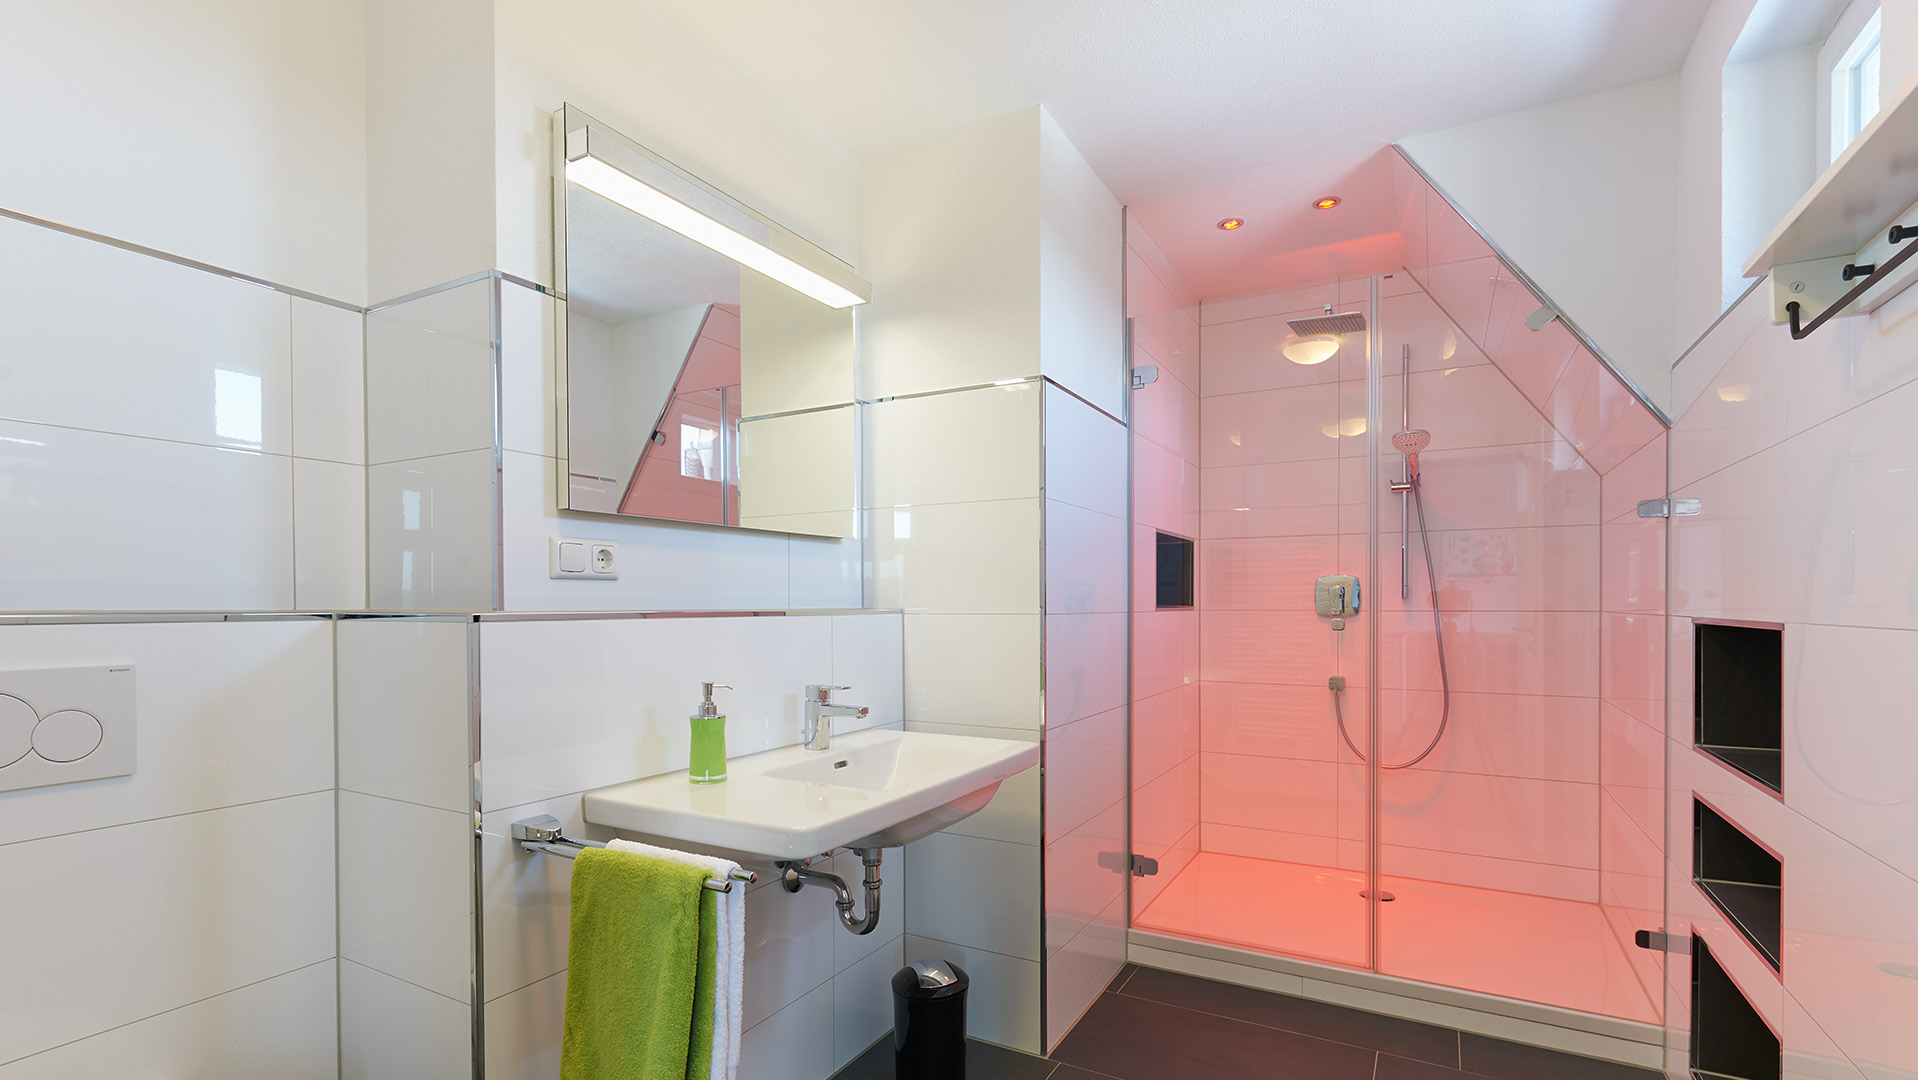 Wechselndes farbiges Licht im Duschbereich bietet einen schönen Kontrast zum reinweißen Badbereich.